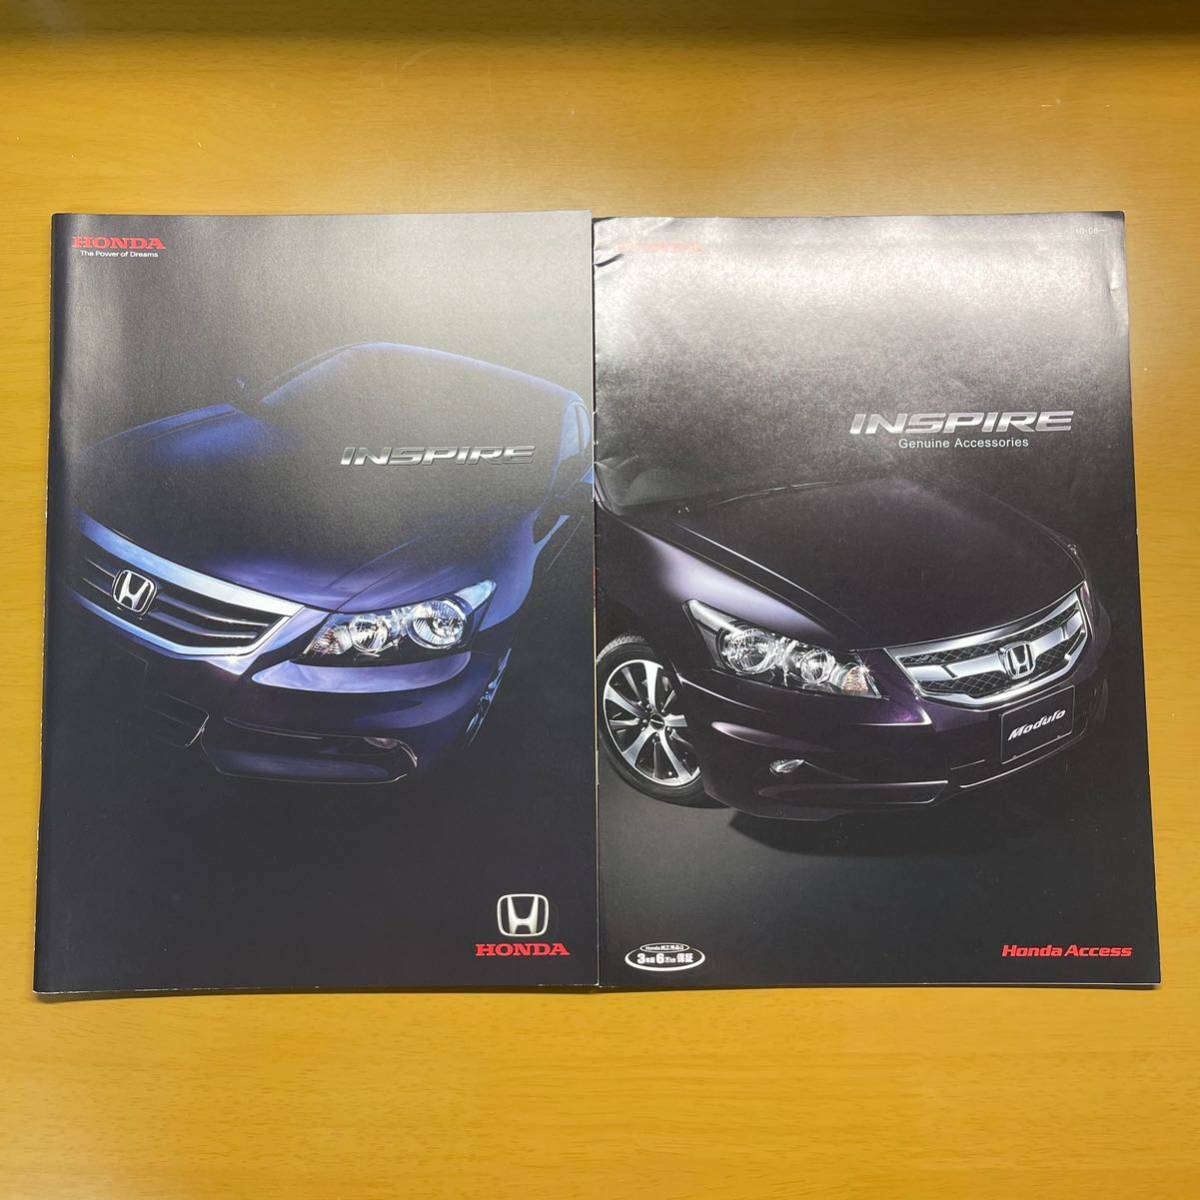  Honda Inspire 2010 год 8 месяц каталог 42P+14P( аксессуары каталог ) быстрое решение бесплатная доставка!!